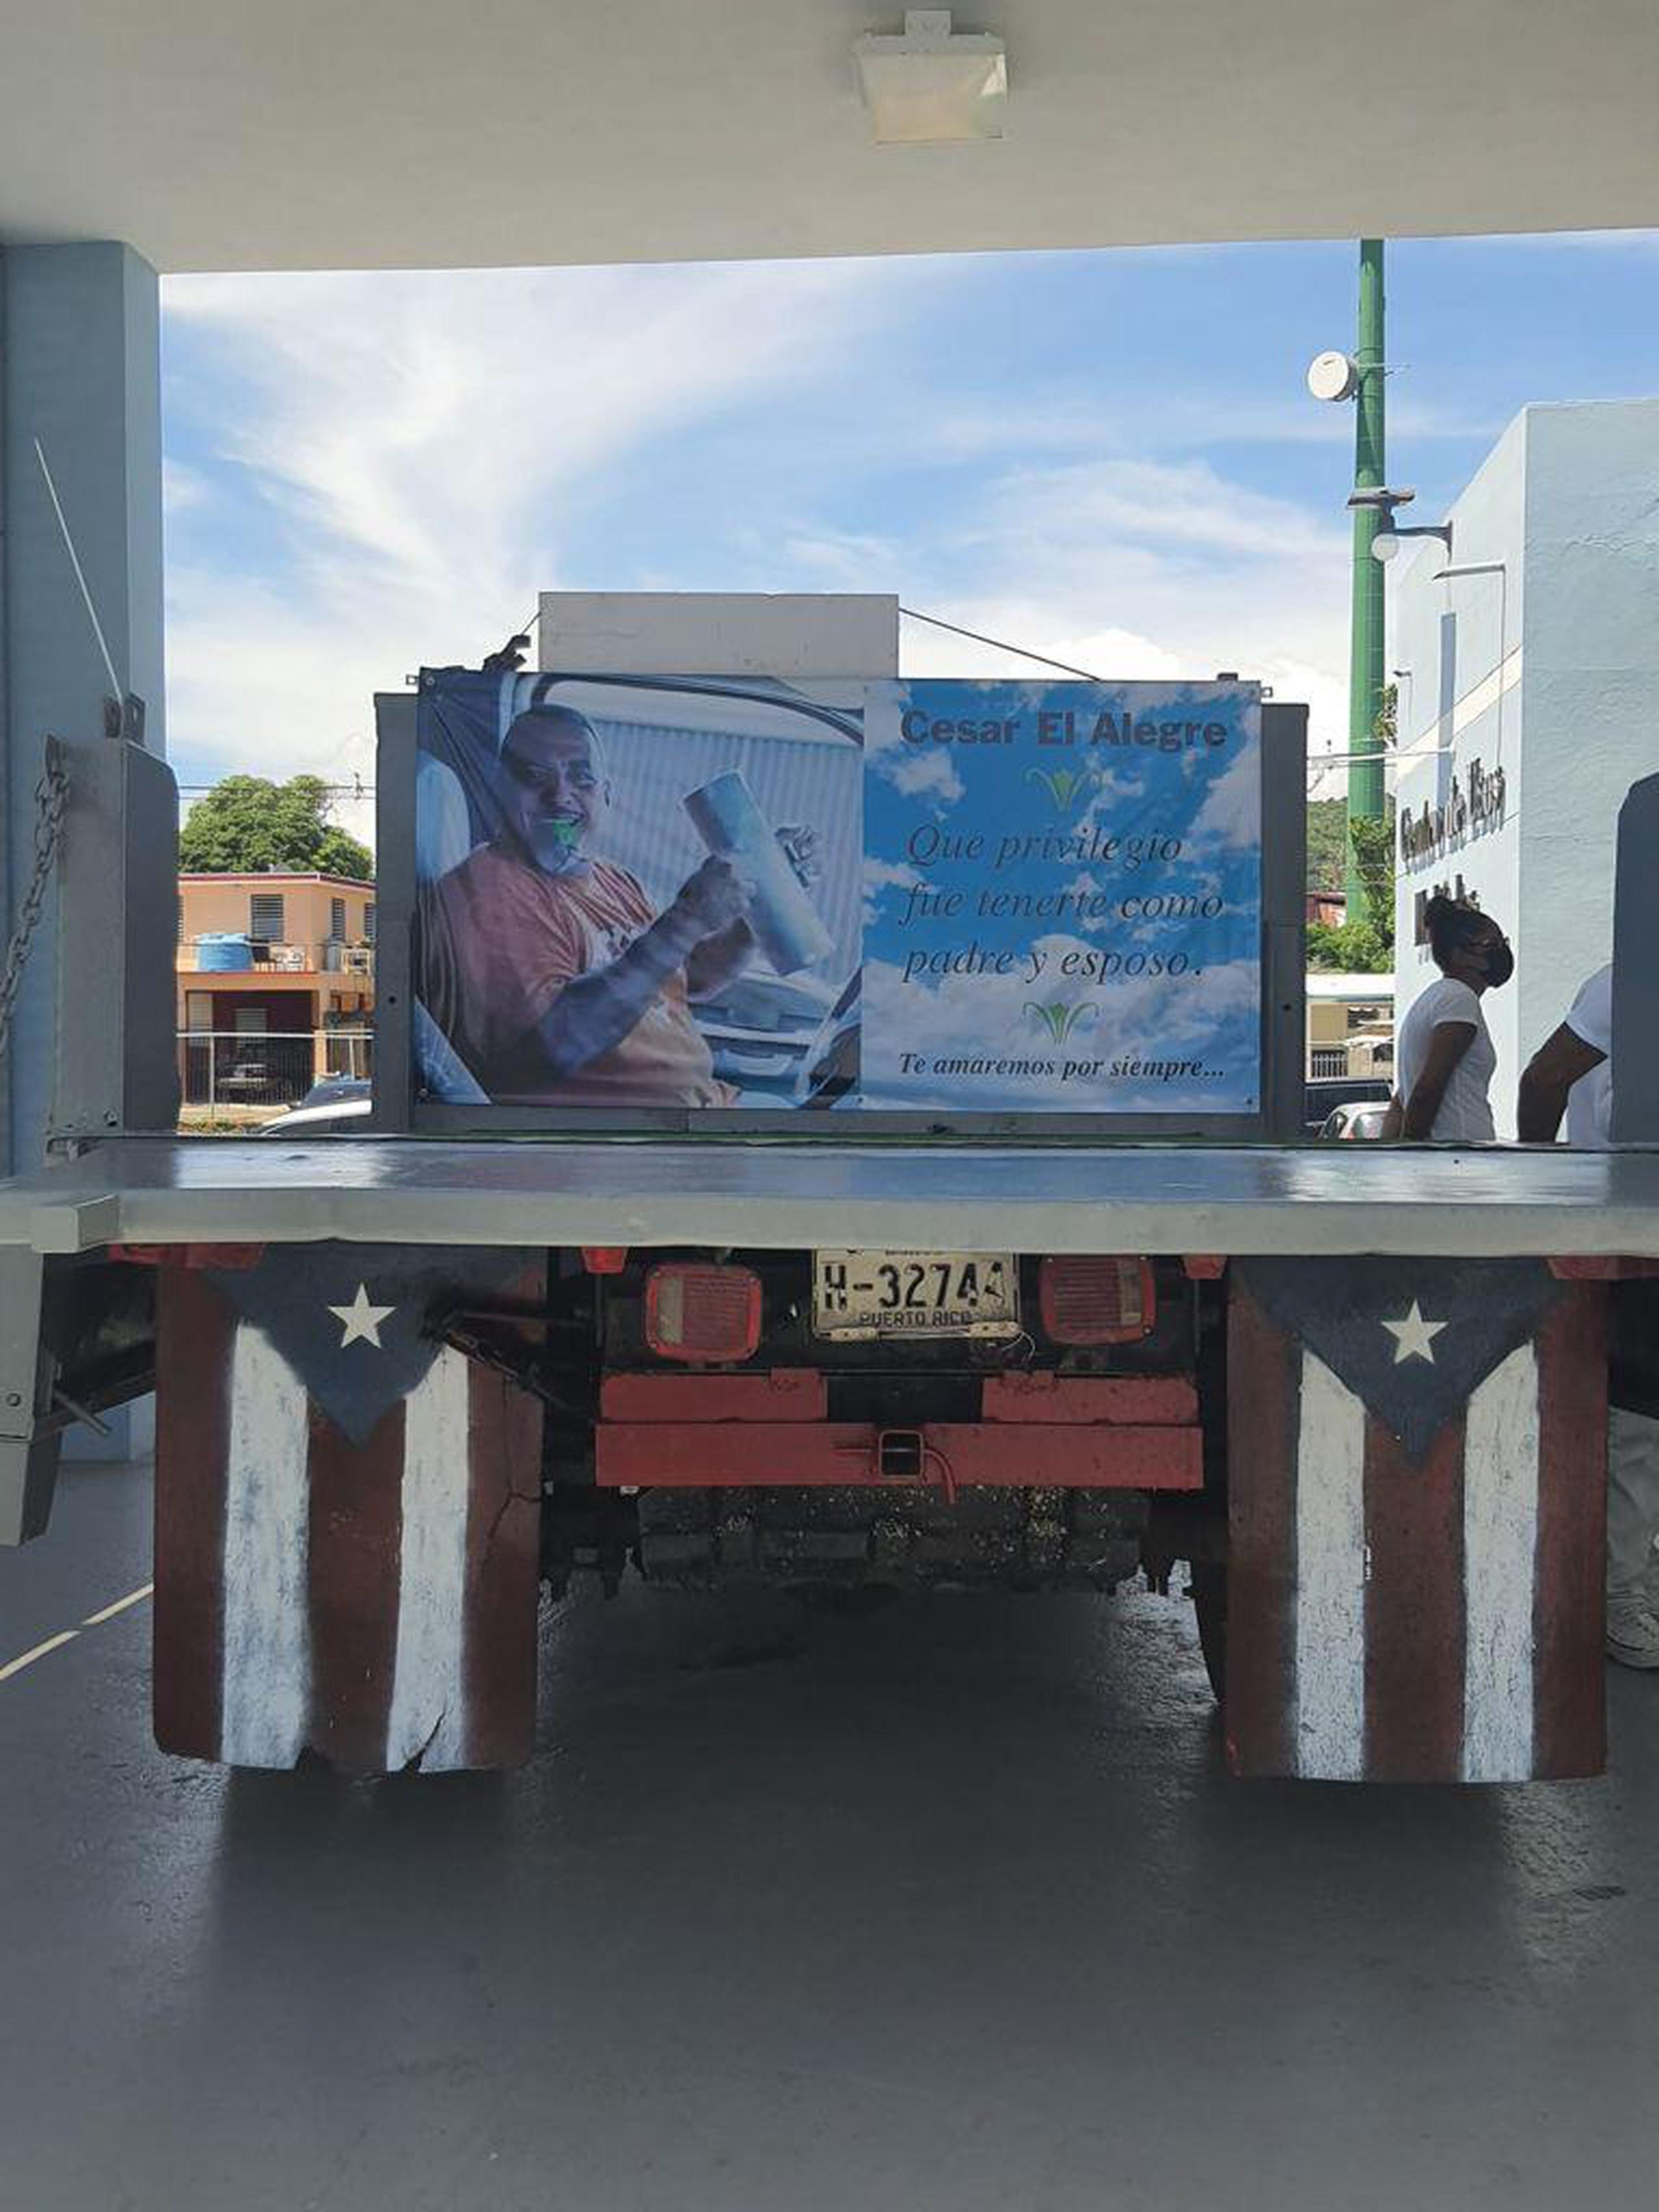 Ceiba rindió homenaje al líder comunitario con una caravana que recorrió distintas áreas del pueblo.